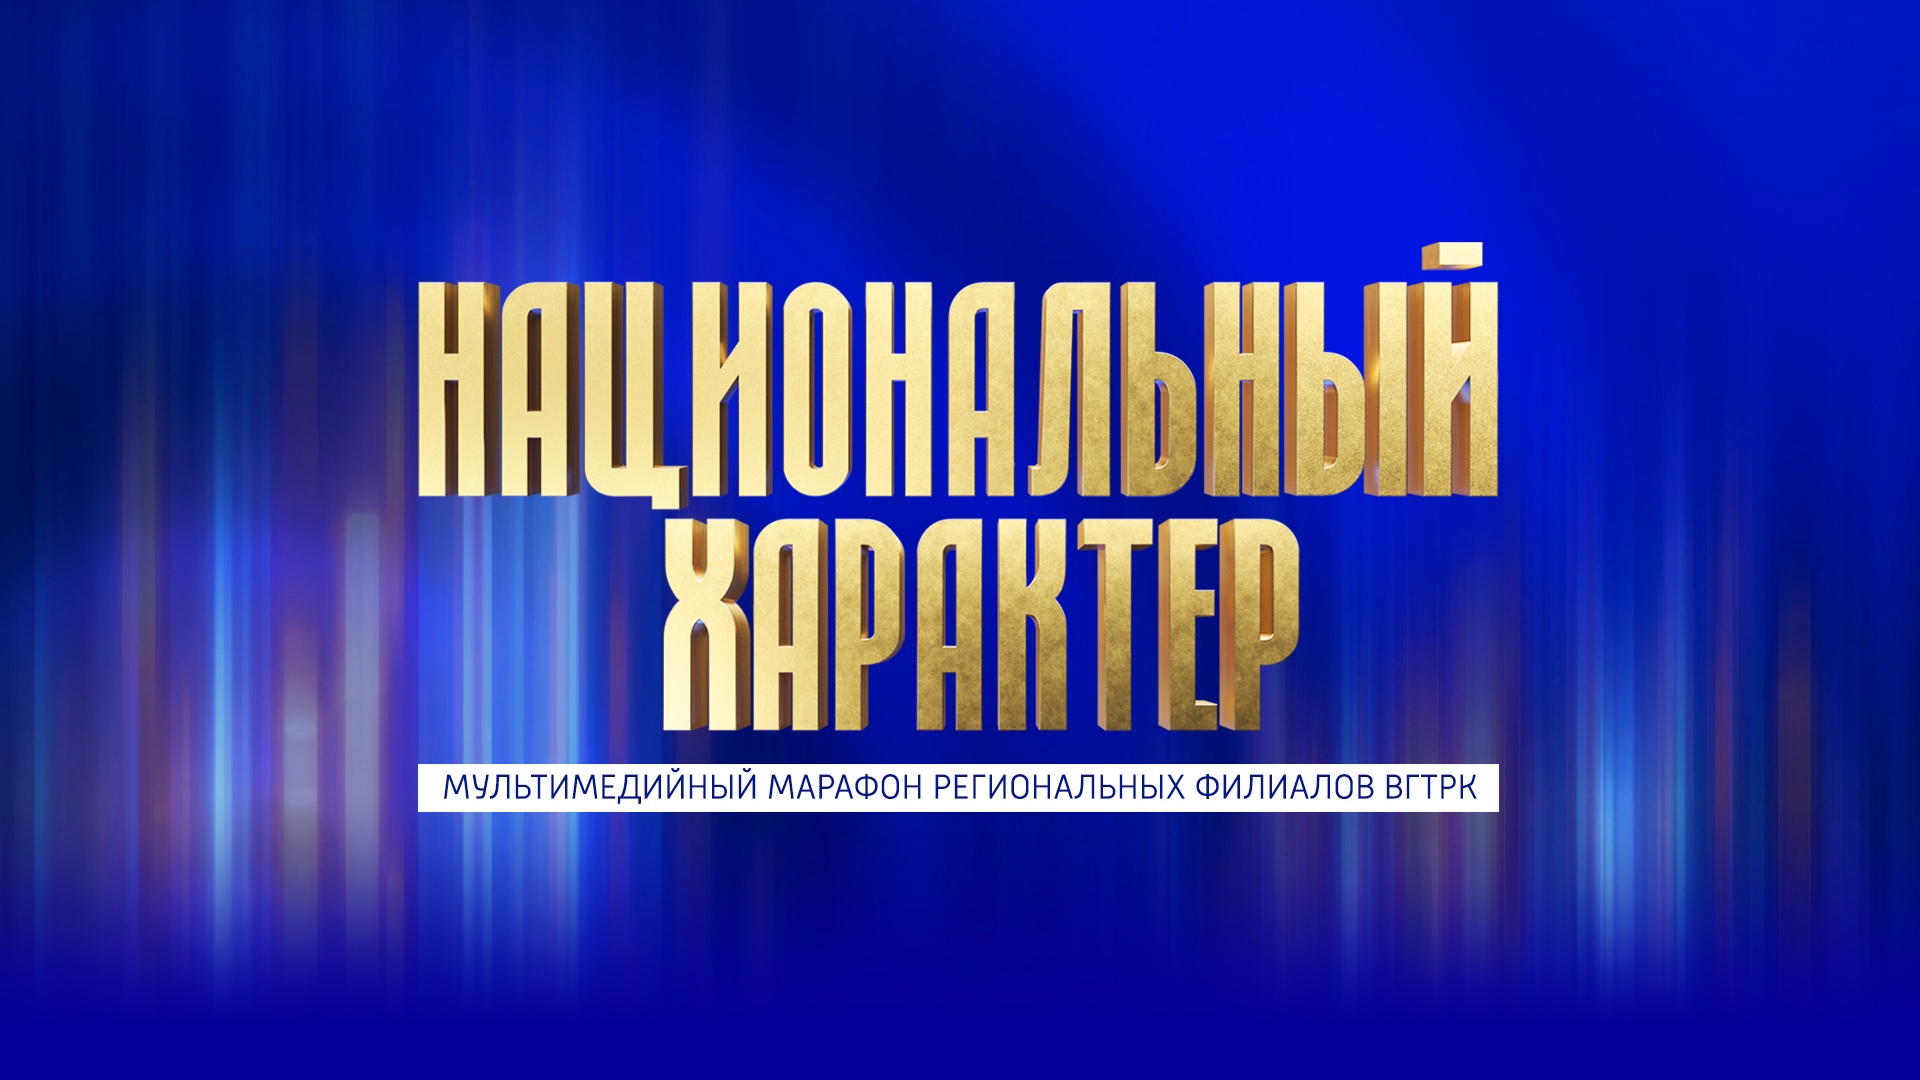 Прямая трансляция: Всероссийский телемарафон "Национальный характер"